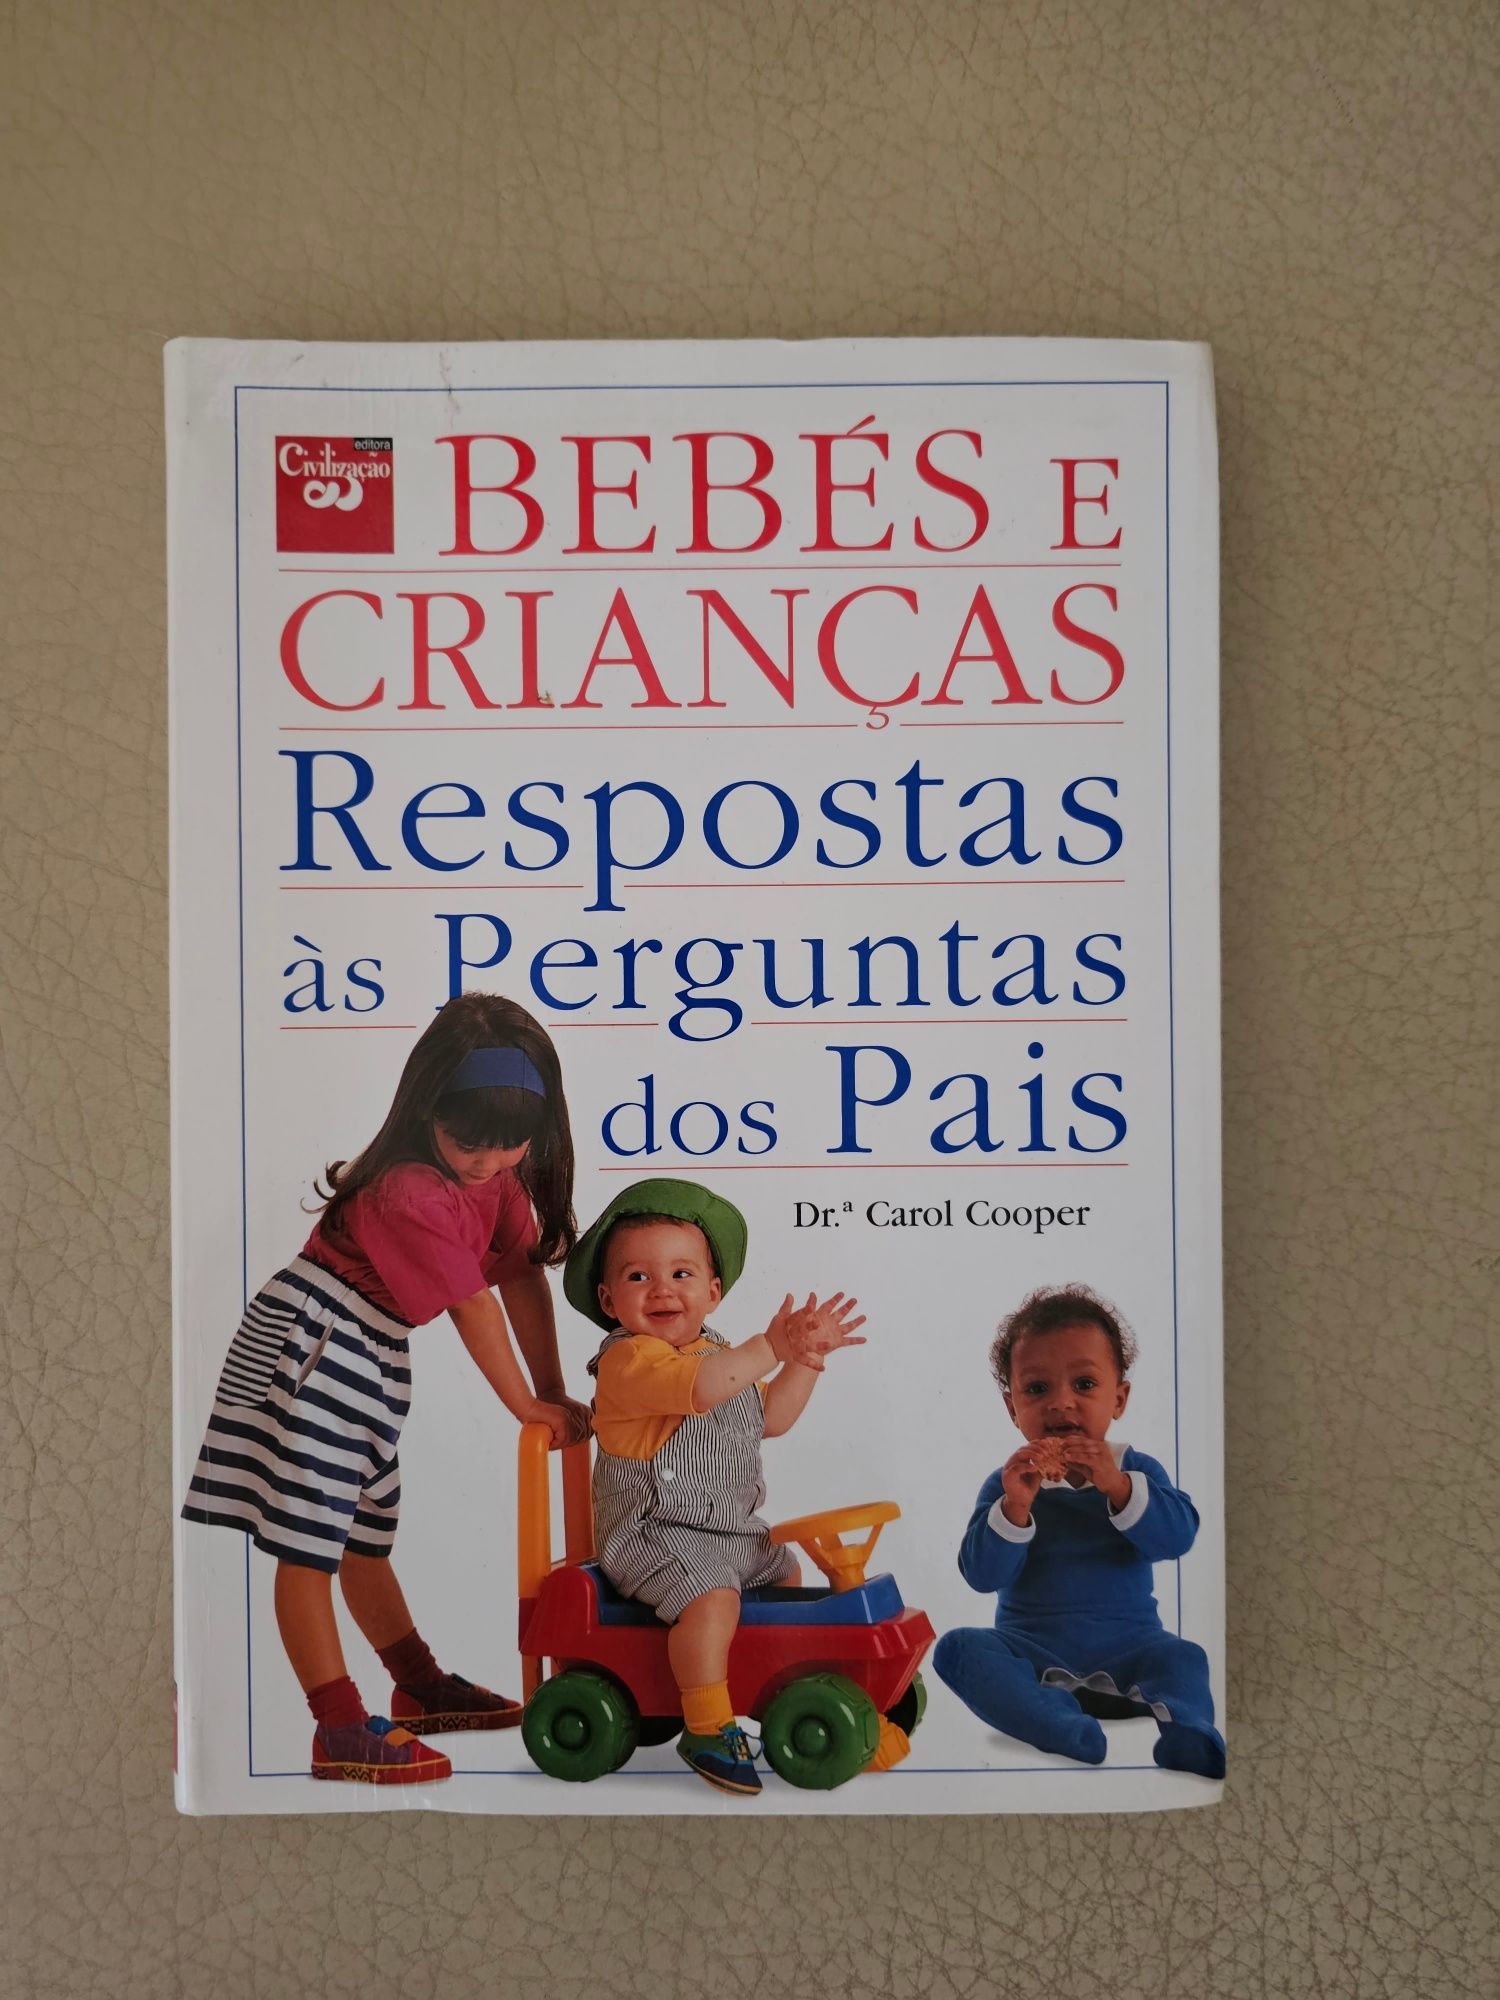 Livro " Bebés e crianças "